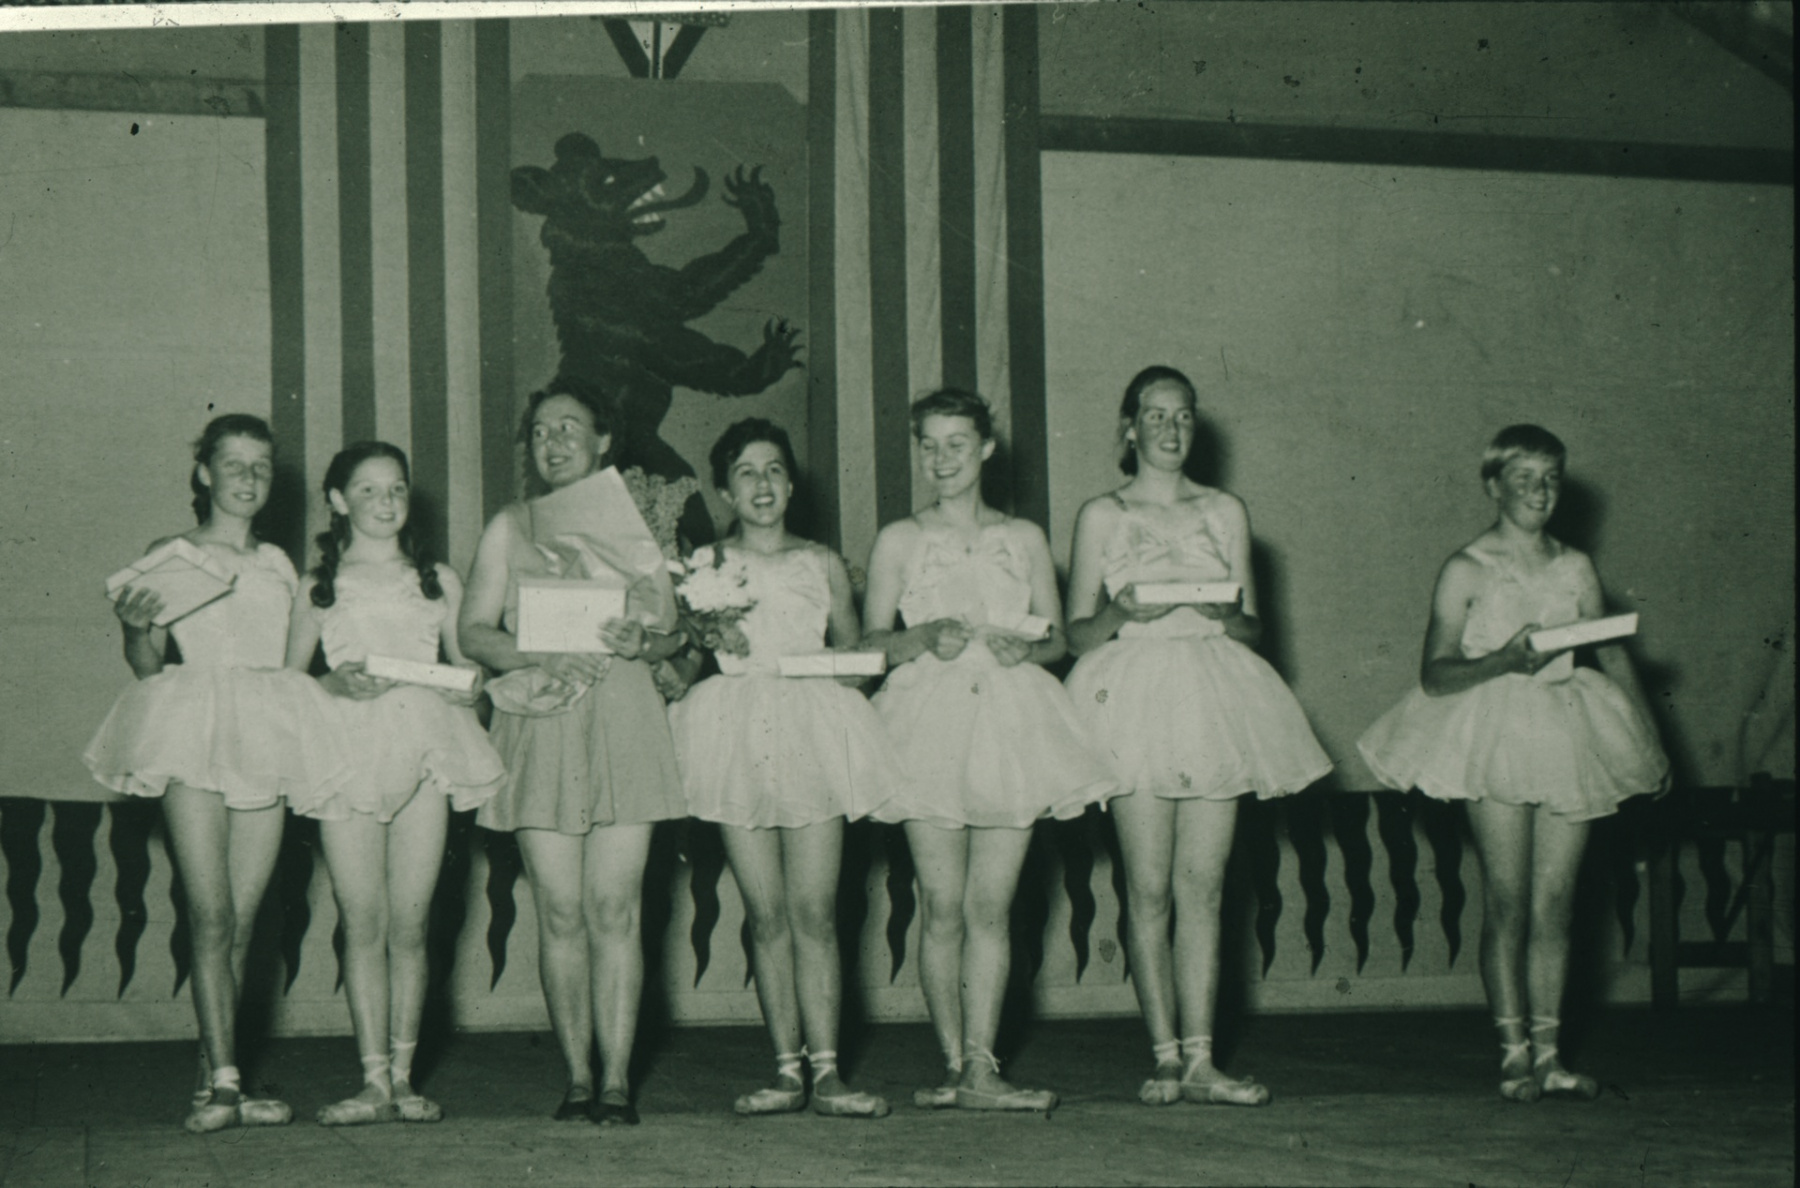 Schulhauseinweihung Dorf 1952, Reigen auf der Bühne. Links aussen Heidi Bohli (1943), rechts aussen Irma Walder (1942), in der Mitte Erika Berger